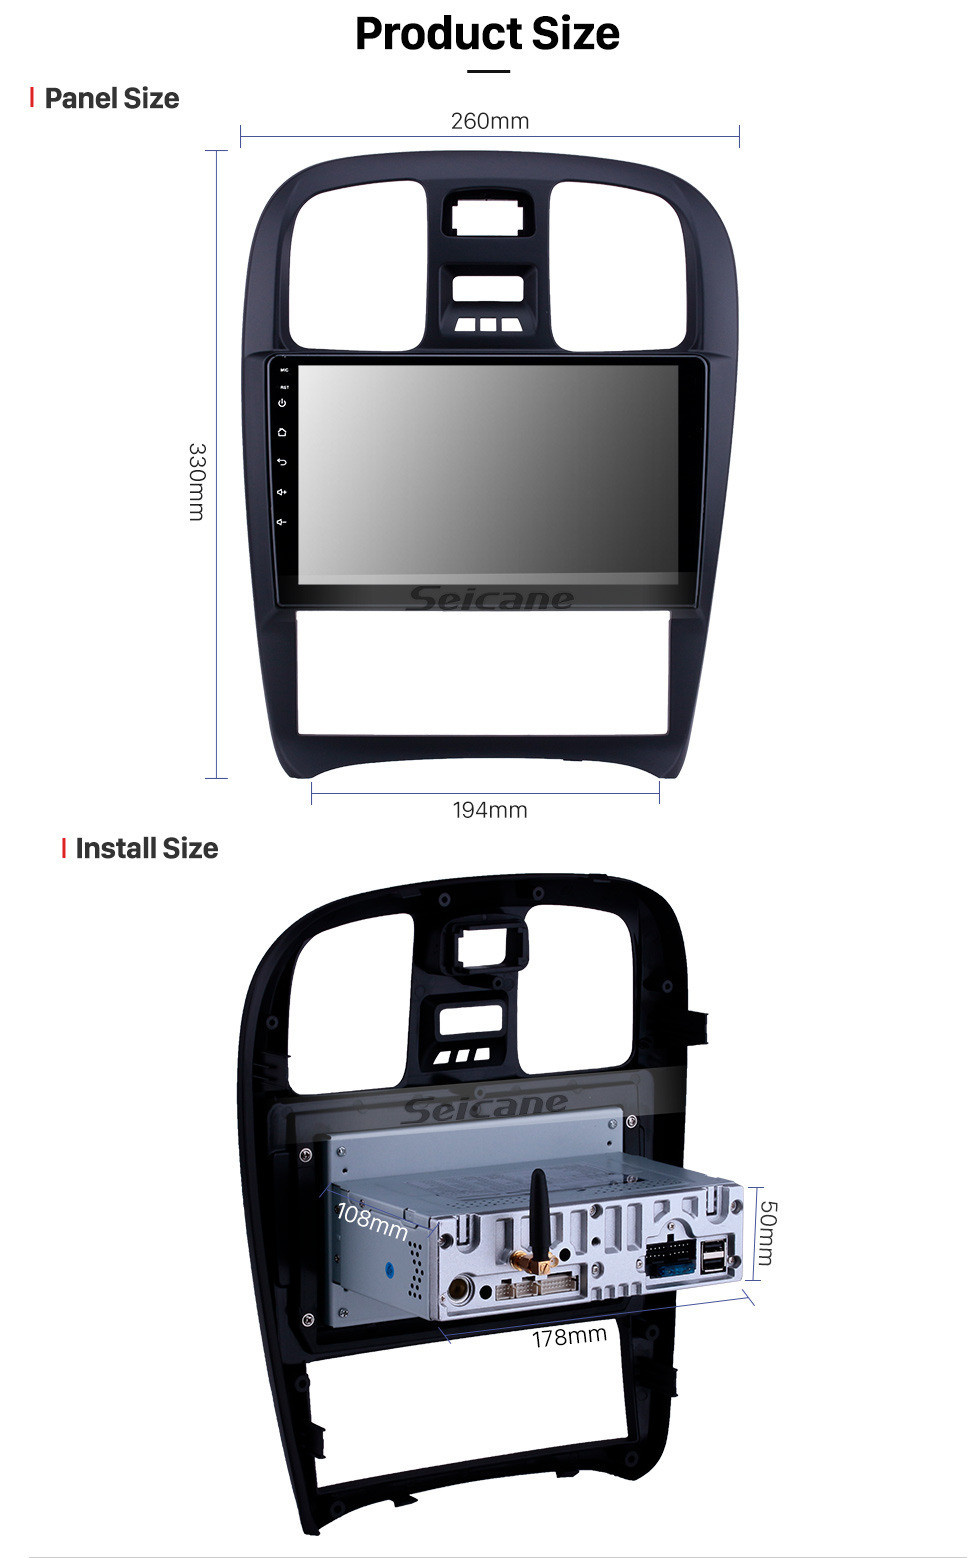 Seicane OEM 9 pulgadas Android 11.0 Radio para 2003-2009 Hyundai Sonata Bluetooth HD con pantalla táctil Navegación GPS Soporte para cámara de vista trasera de Carplay